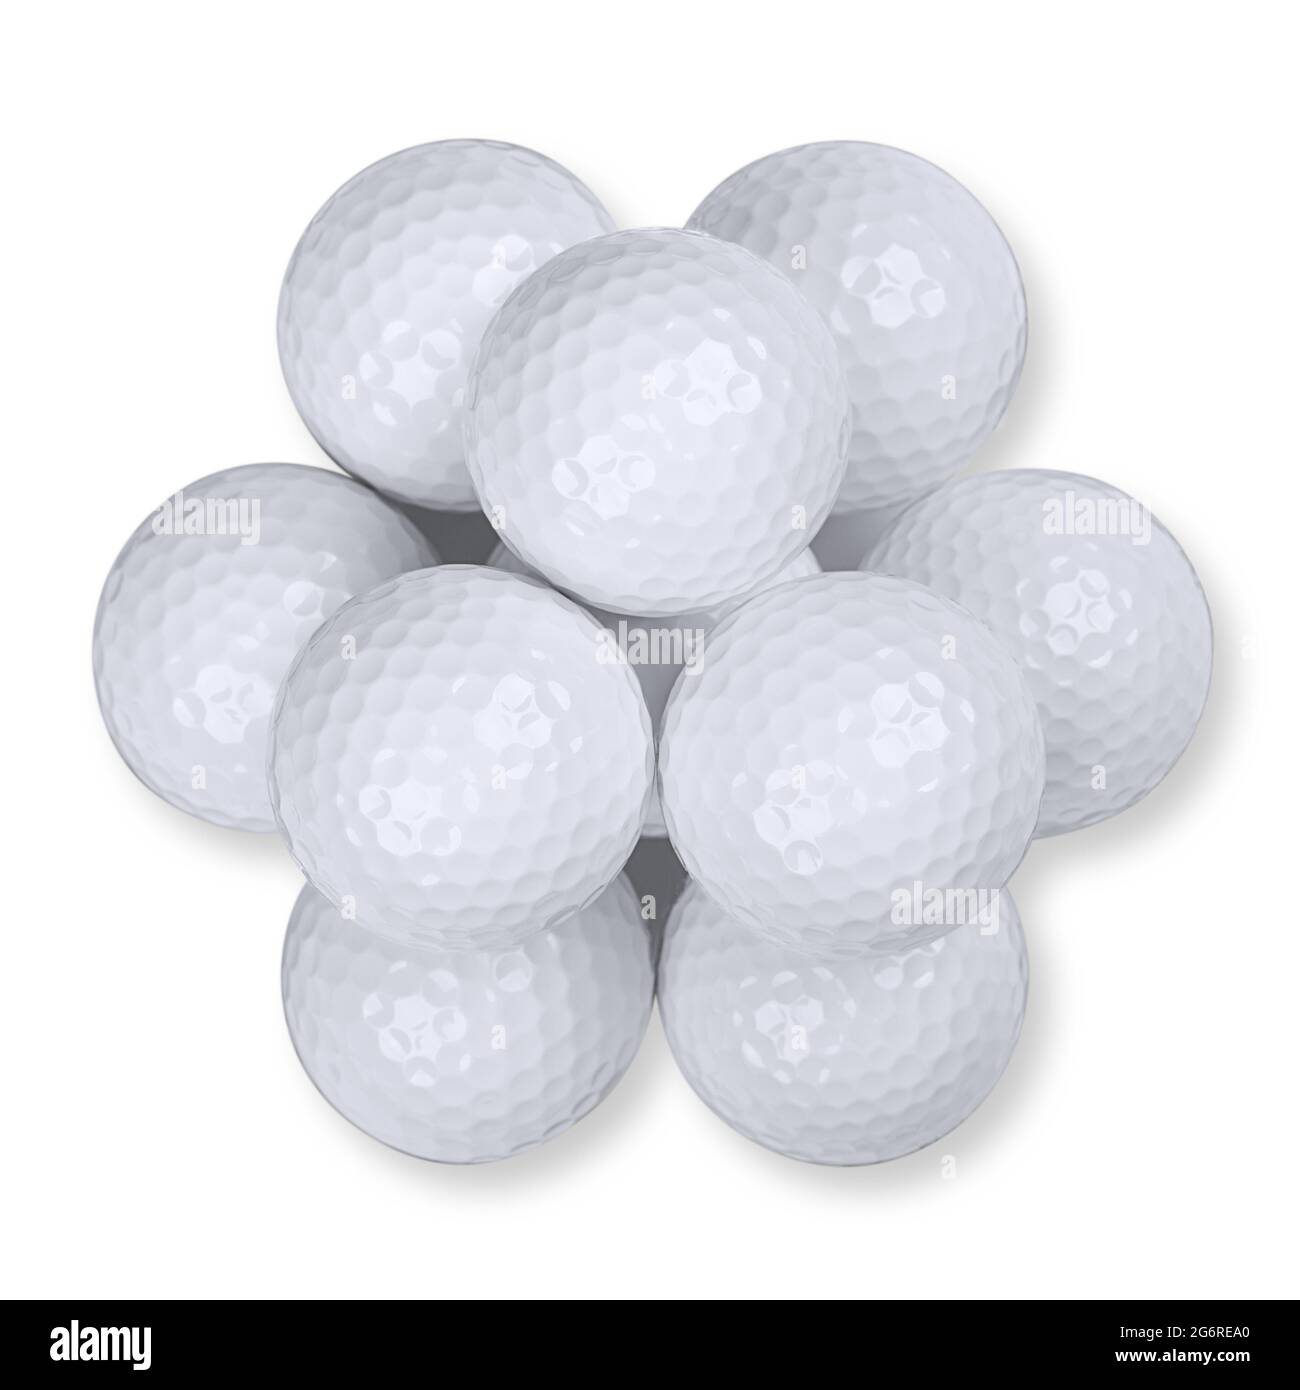 Pelotas de golf apiladas en forma de pirámide, desde arriba, sobre fondo blanco. Un montón de diez pelotas de golf americanas blancas con muescas especiales. Foto de stock